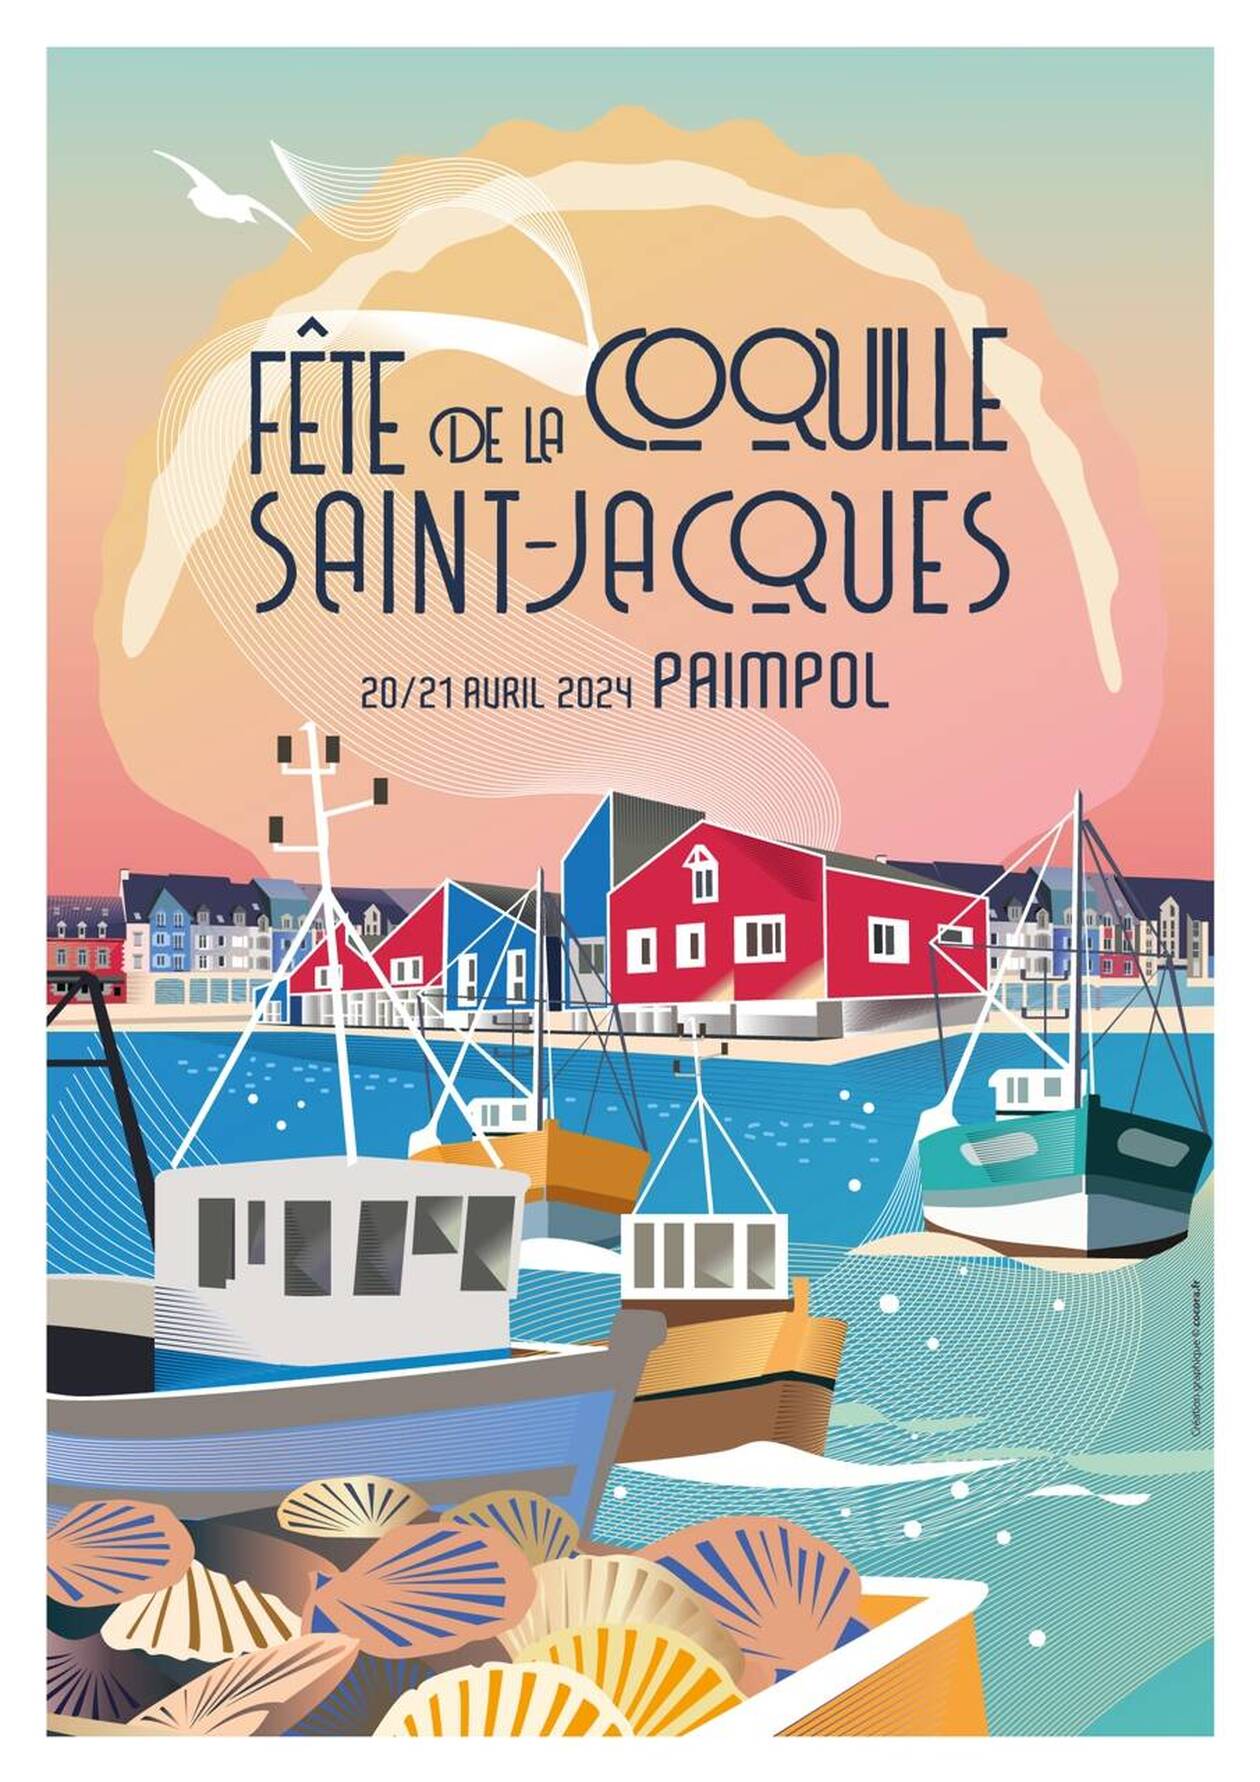 Fête de la Coquille Saint-Jacques